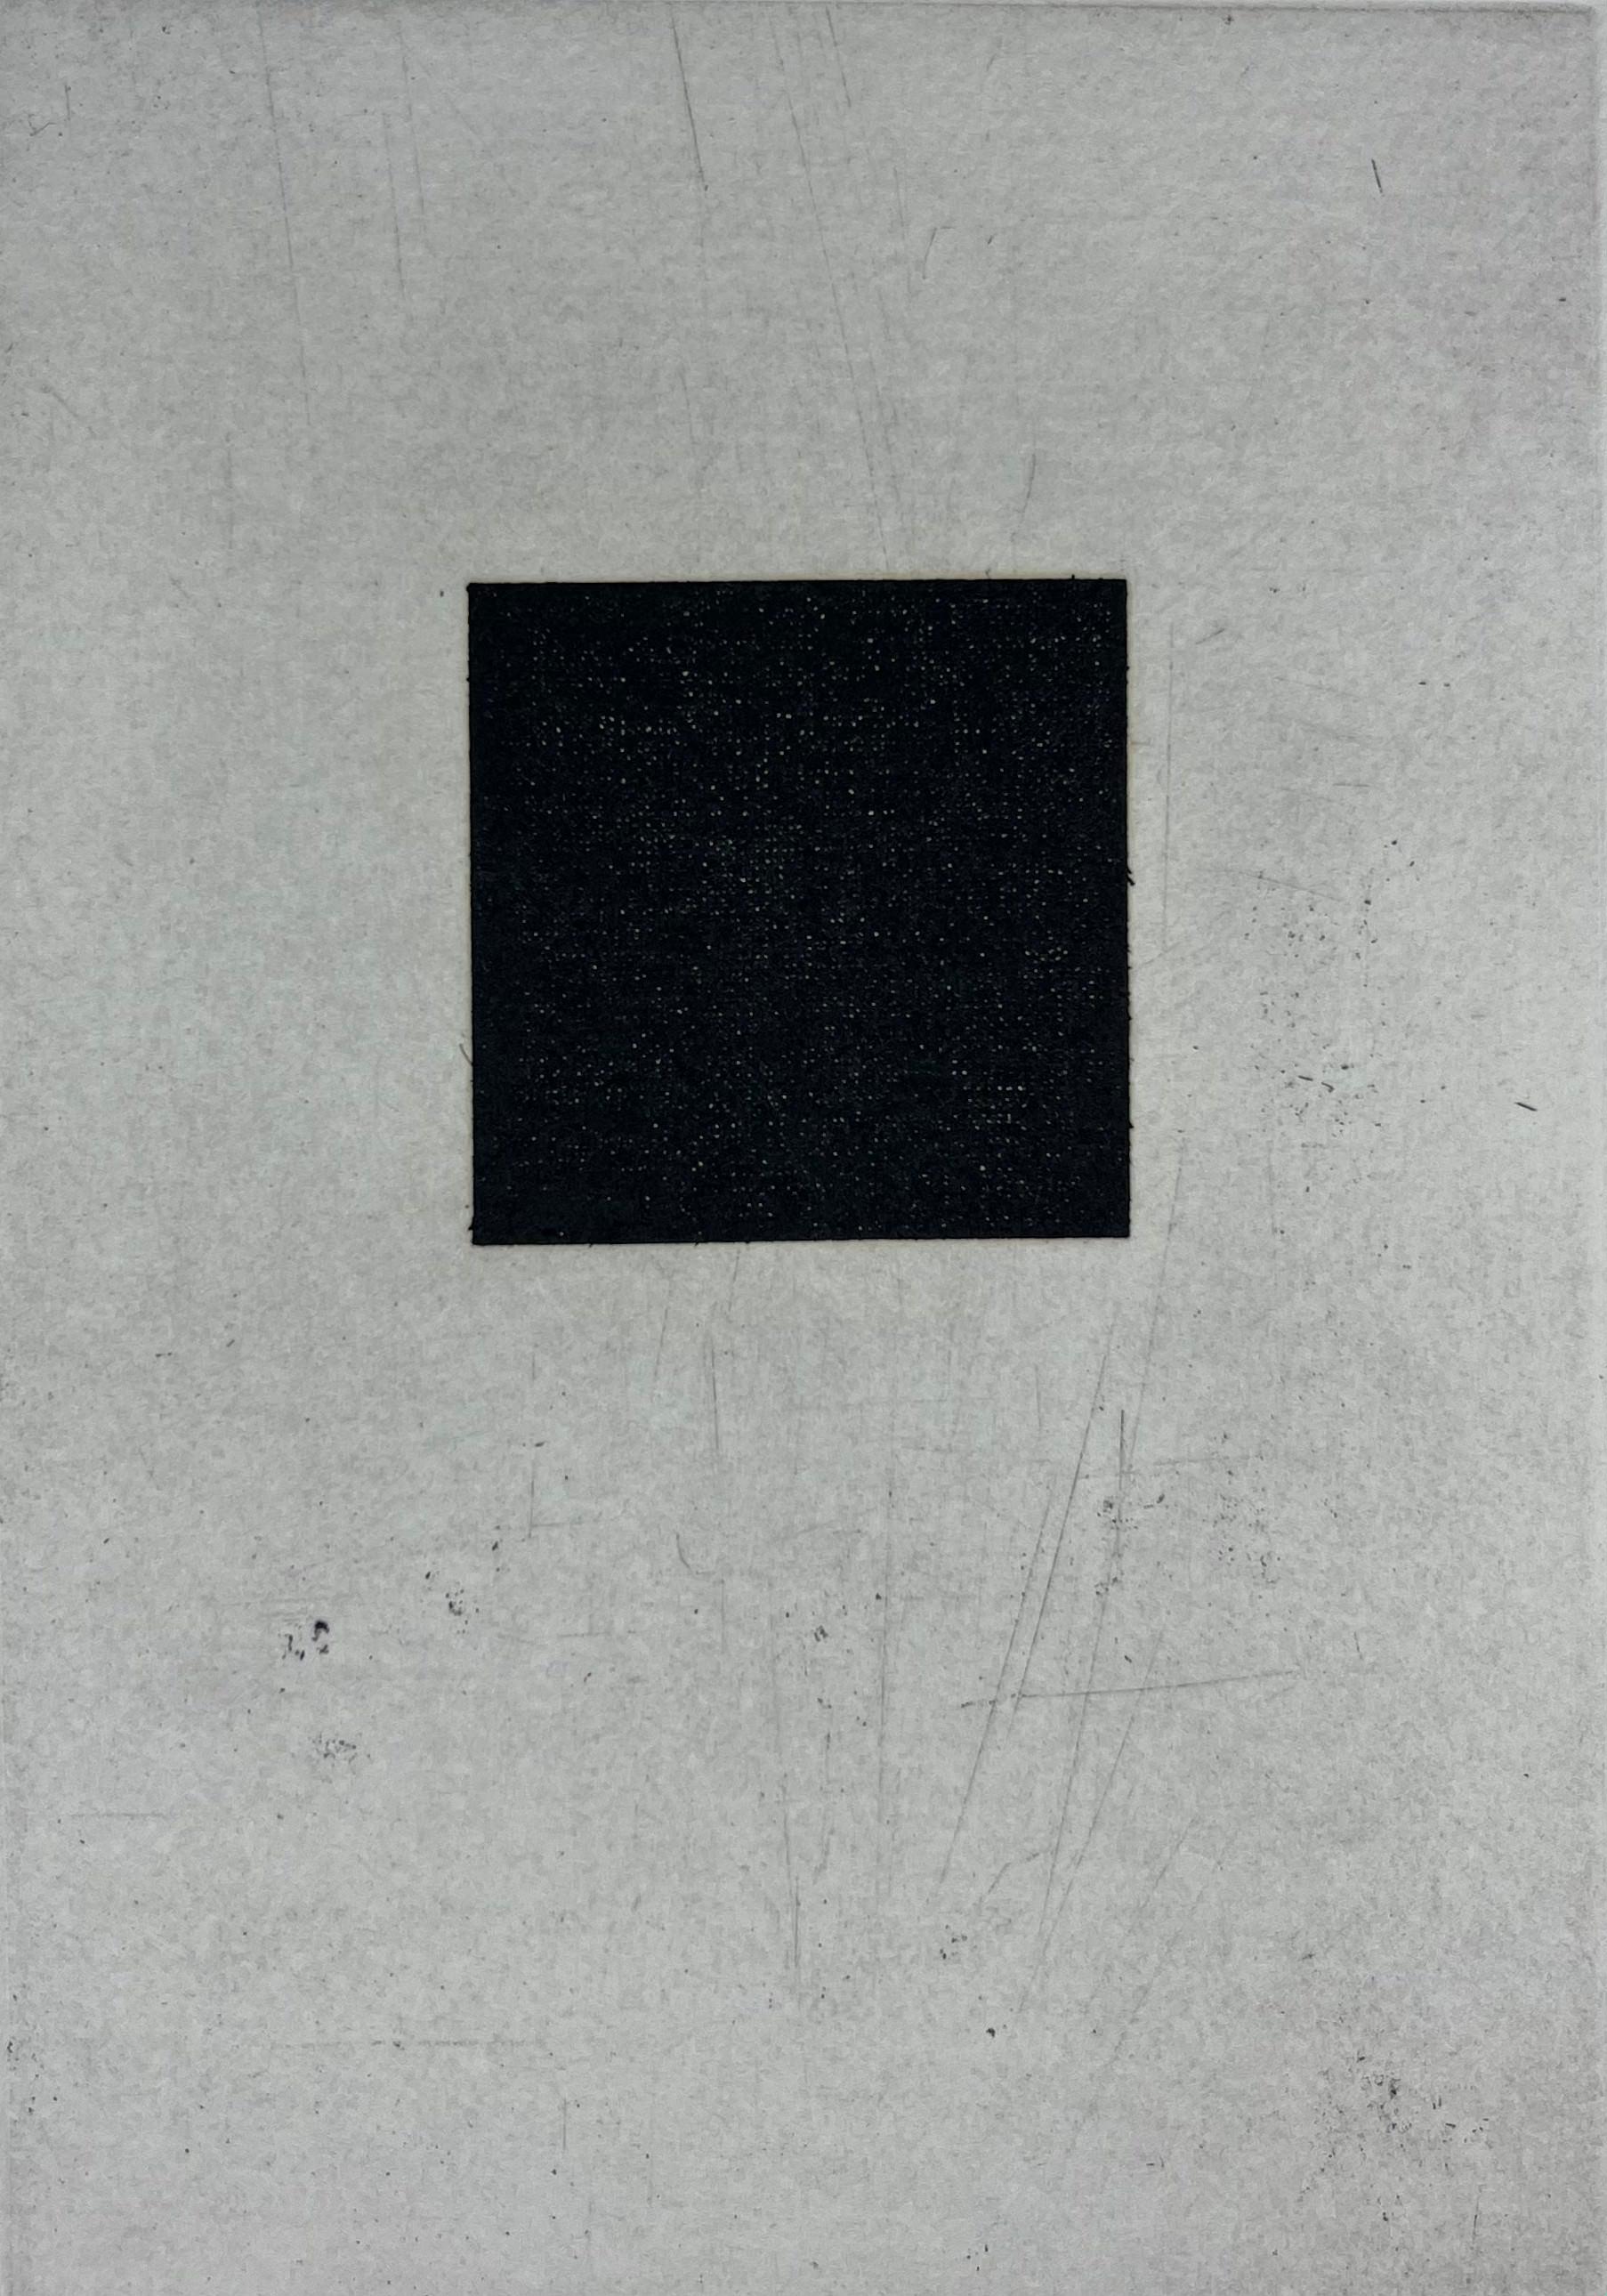 Japanisch 1986 signiert limitierte Auflage Original-Kunstdruck Radierung  15x11 Zoll. – Print von Mitsuo Miura